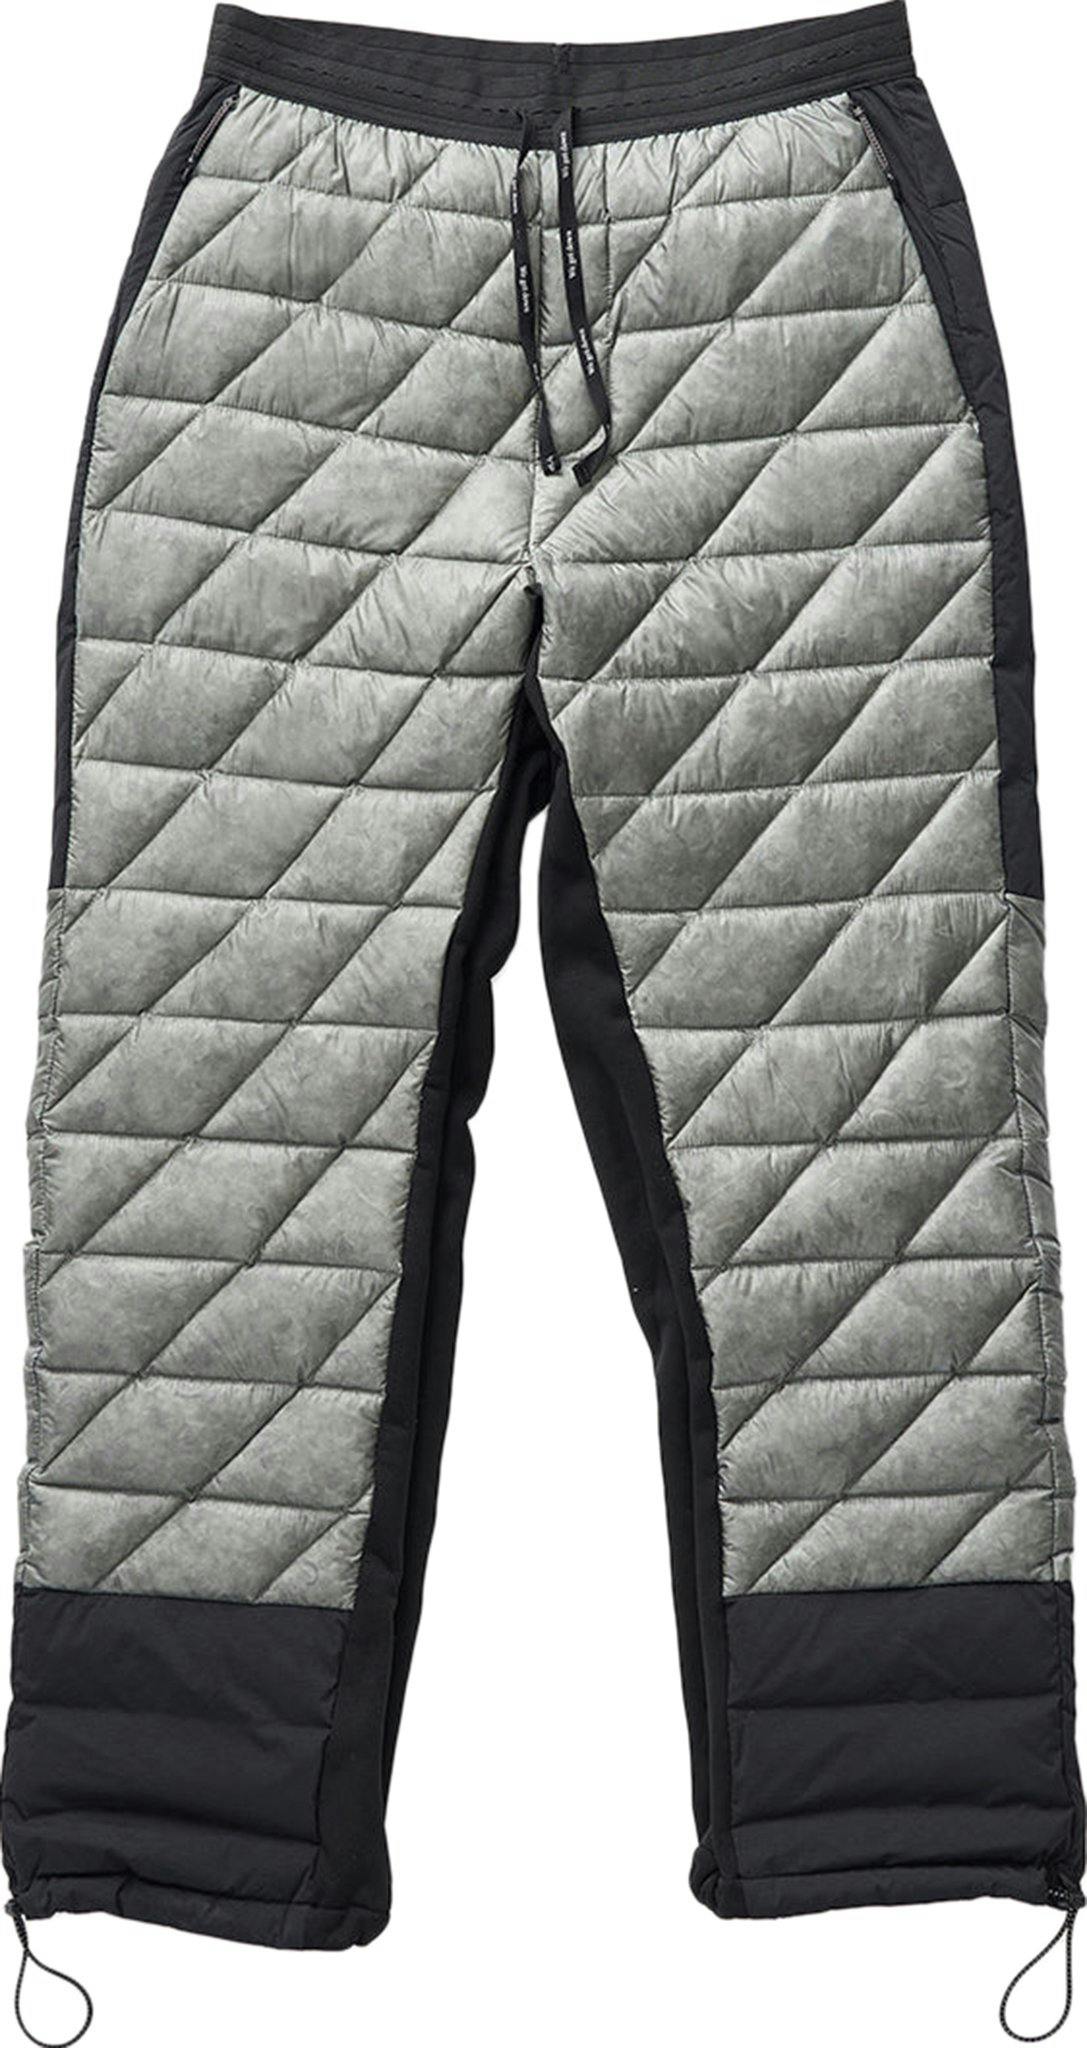 Numéro de l'image de la galerie de produits 1 pour le produit Pantalon de survêtement en duvet hybride - Femme